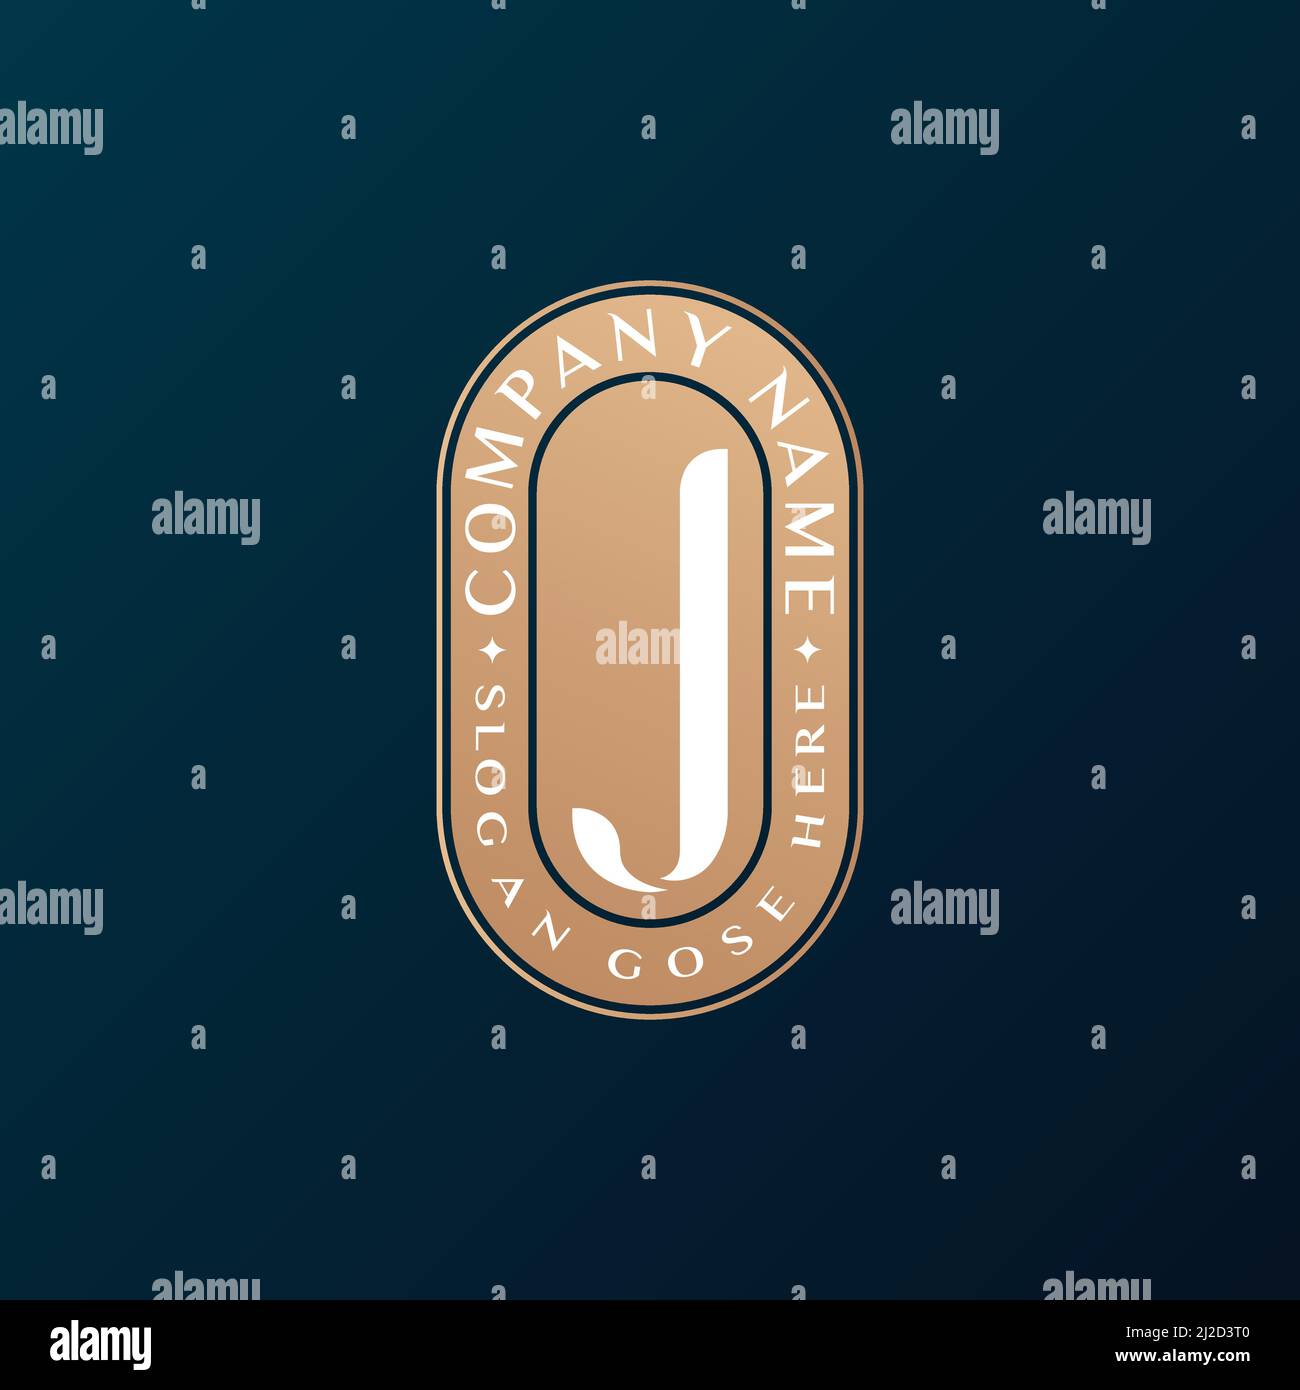 Abstrait Emblem Premium luxe identité d'entreprise élégante lettre J logo design Illustration de Vecteur